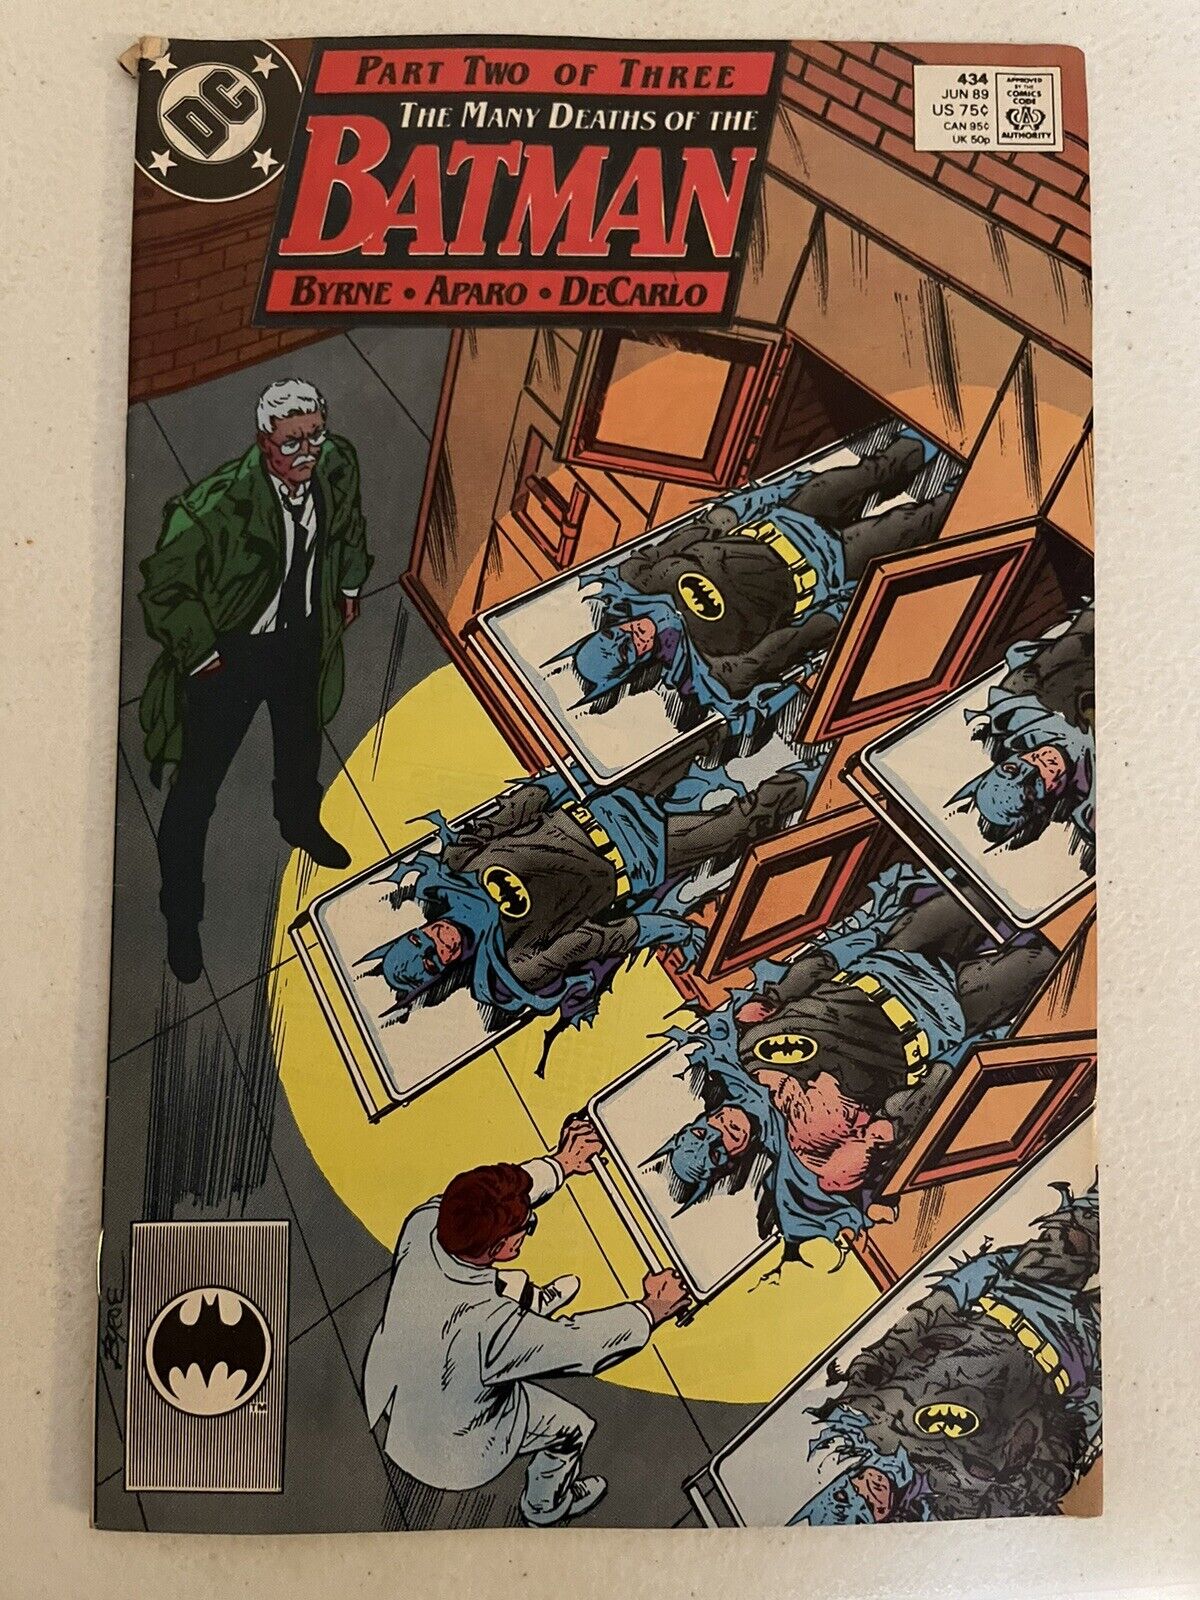 Batman #434 DC Comics 1989